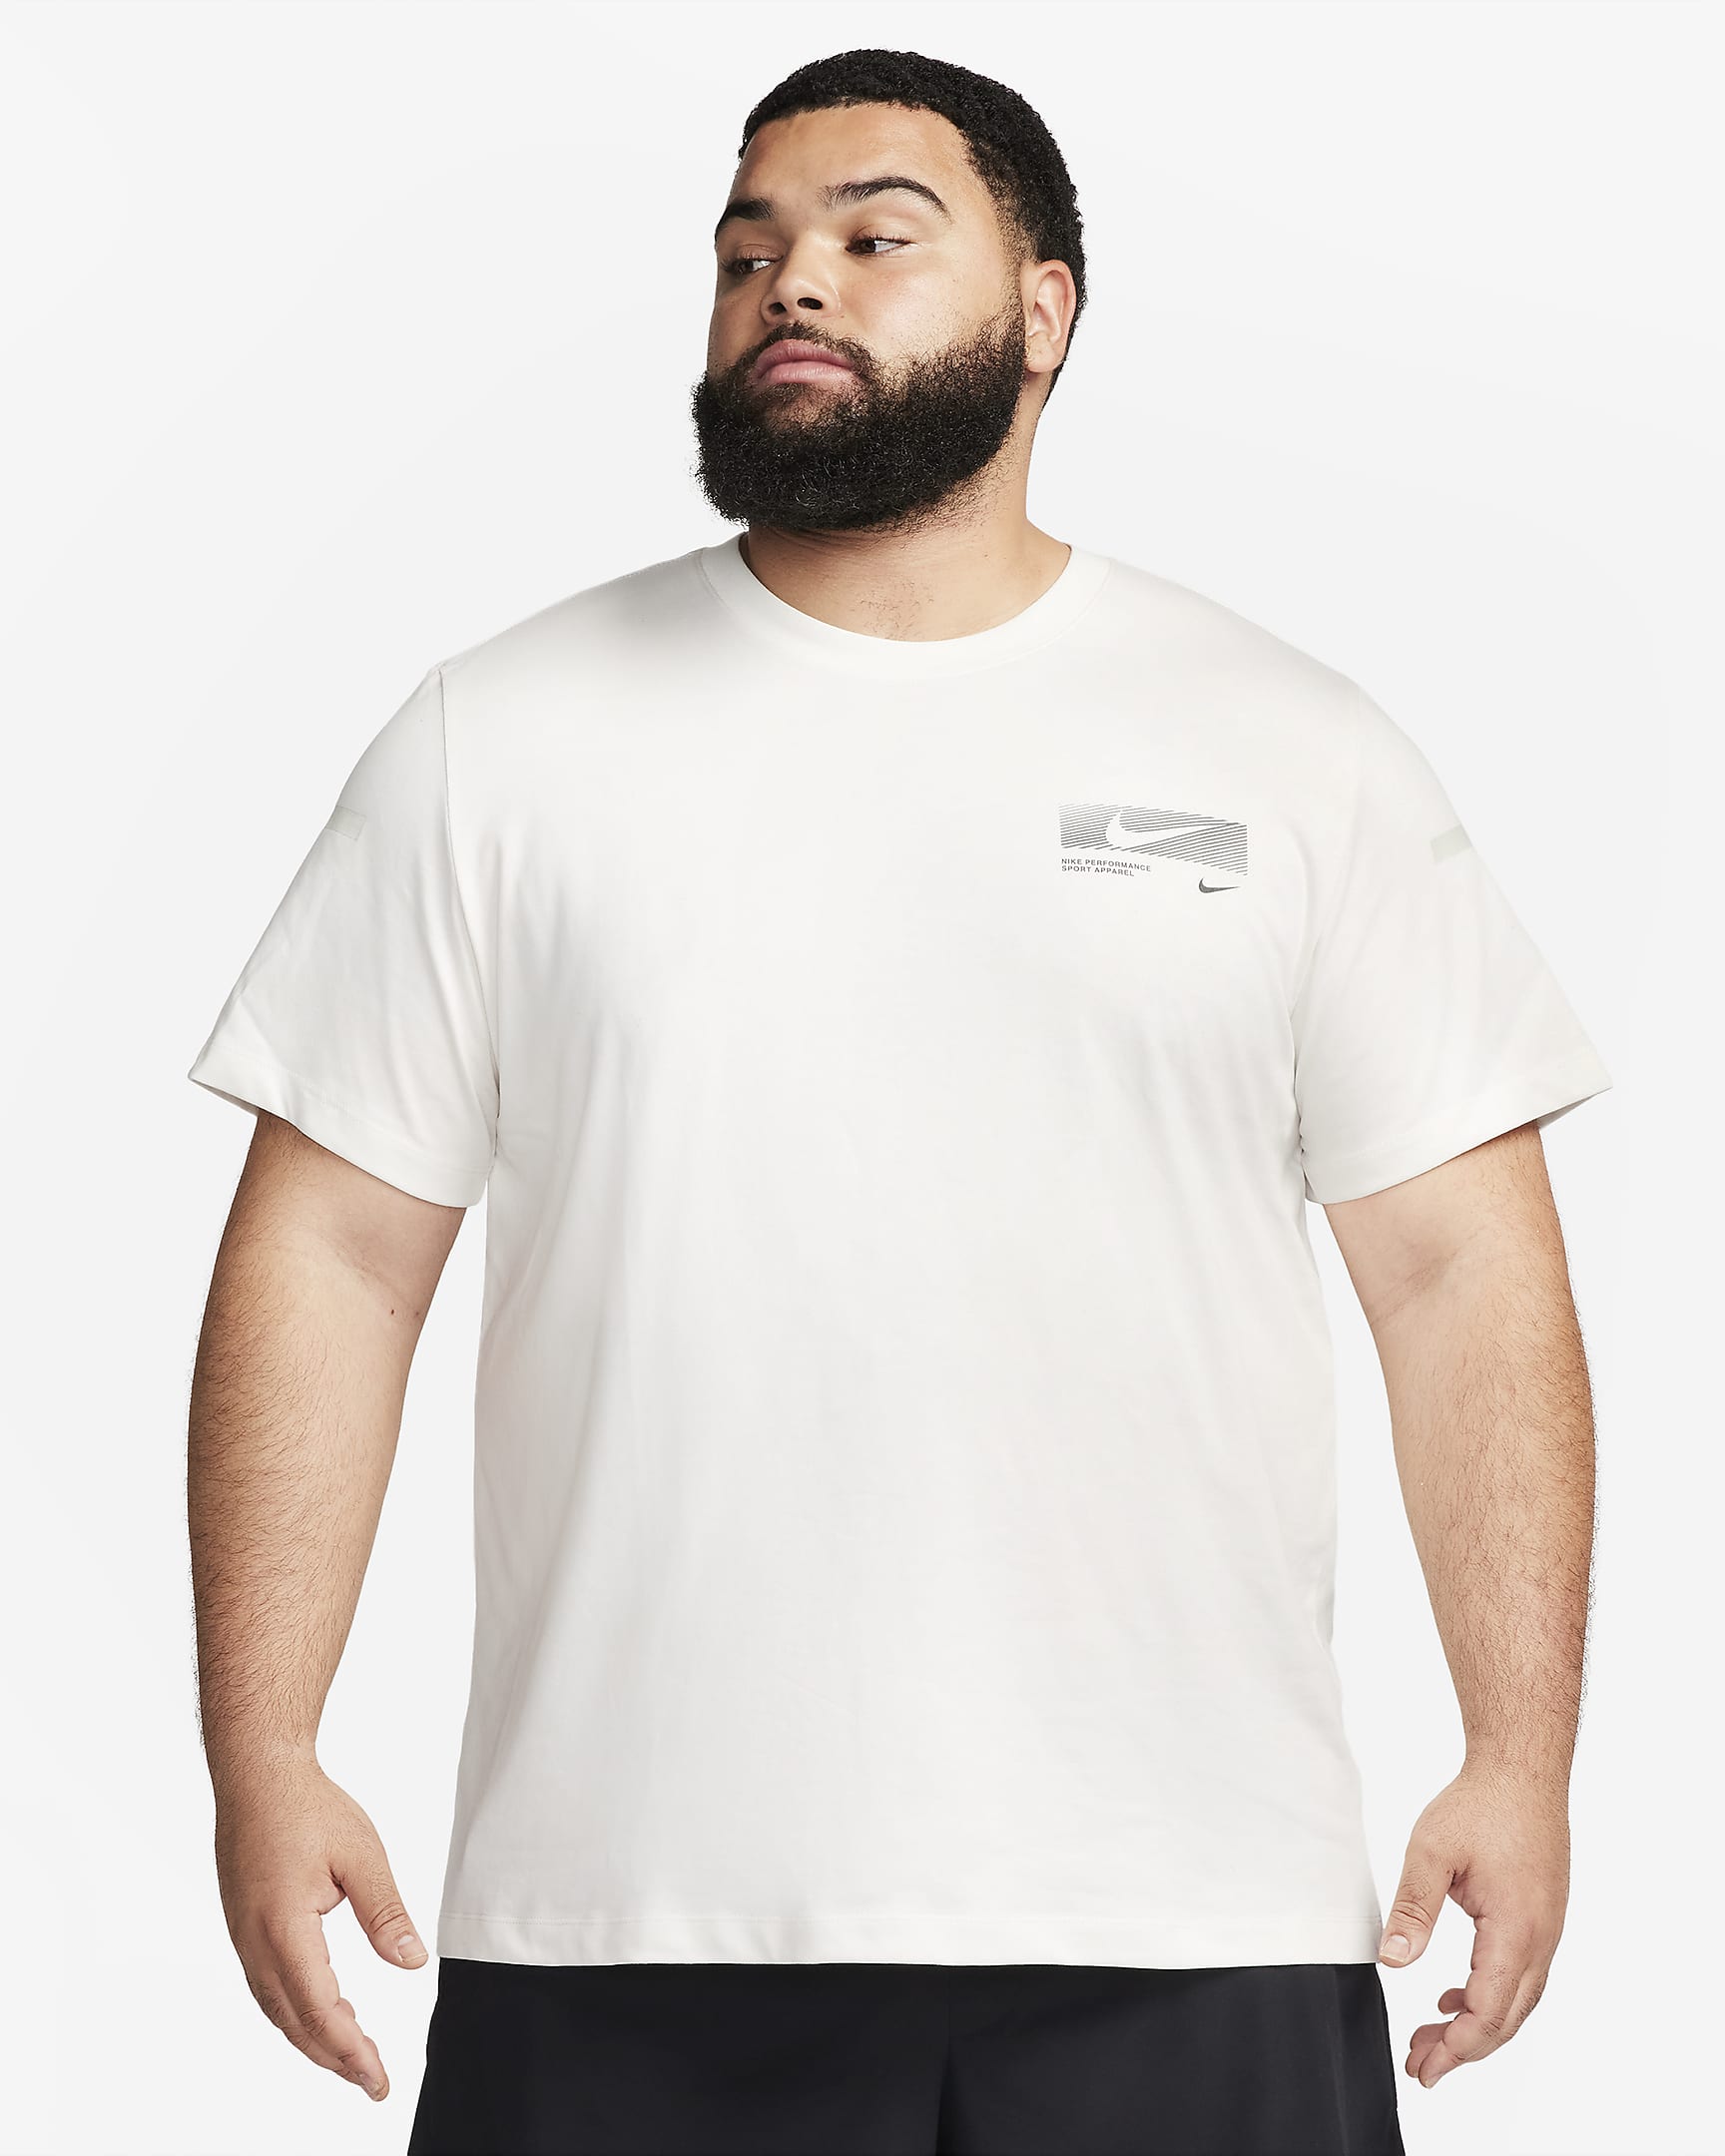 Nike Dri-FIT Men's Fitness T-Shirt. Nike AT